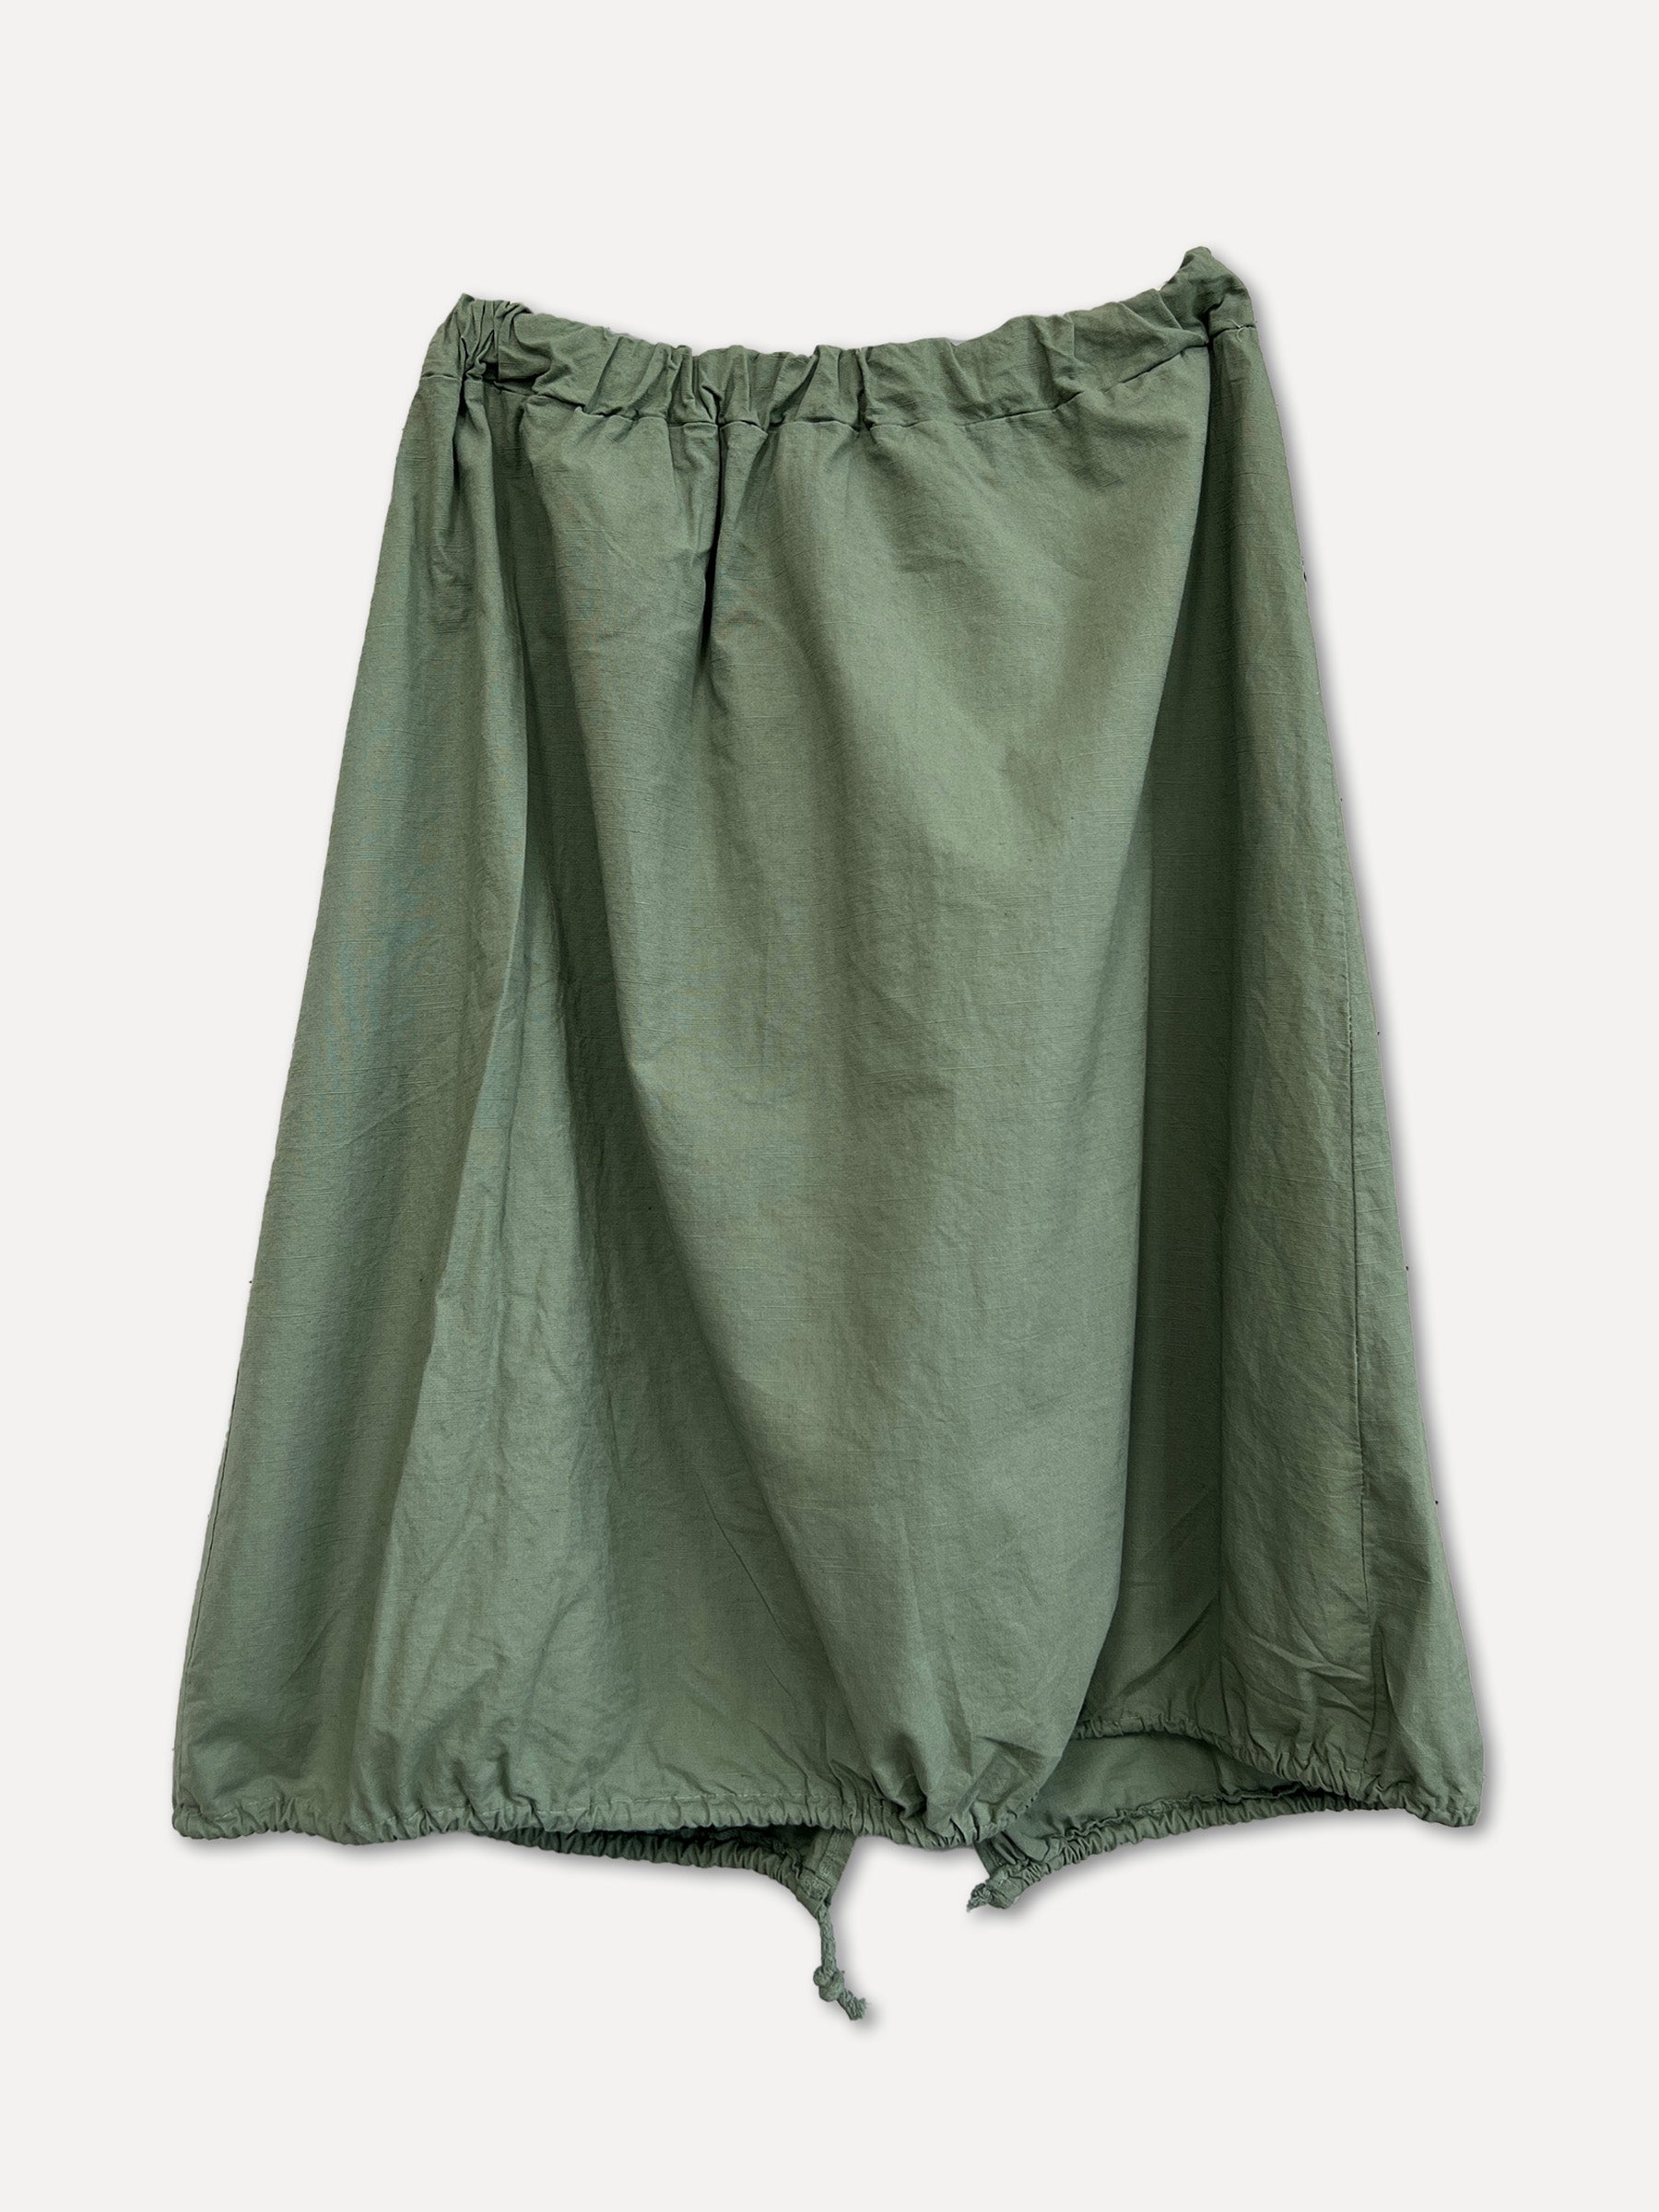 ROMA Skirt, Army